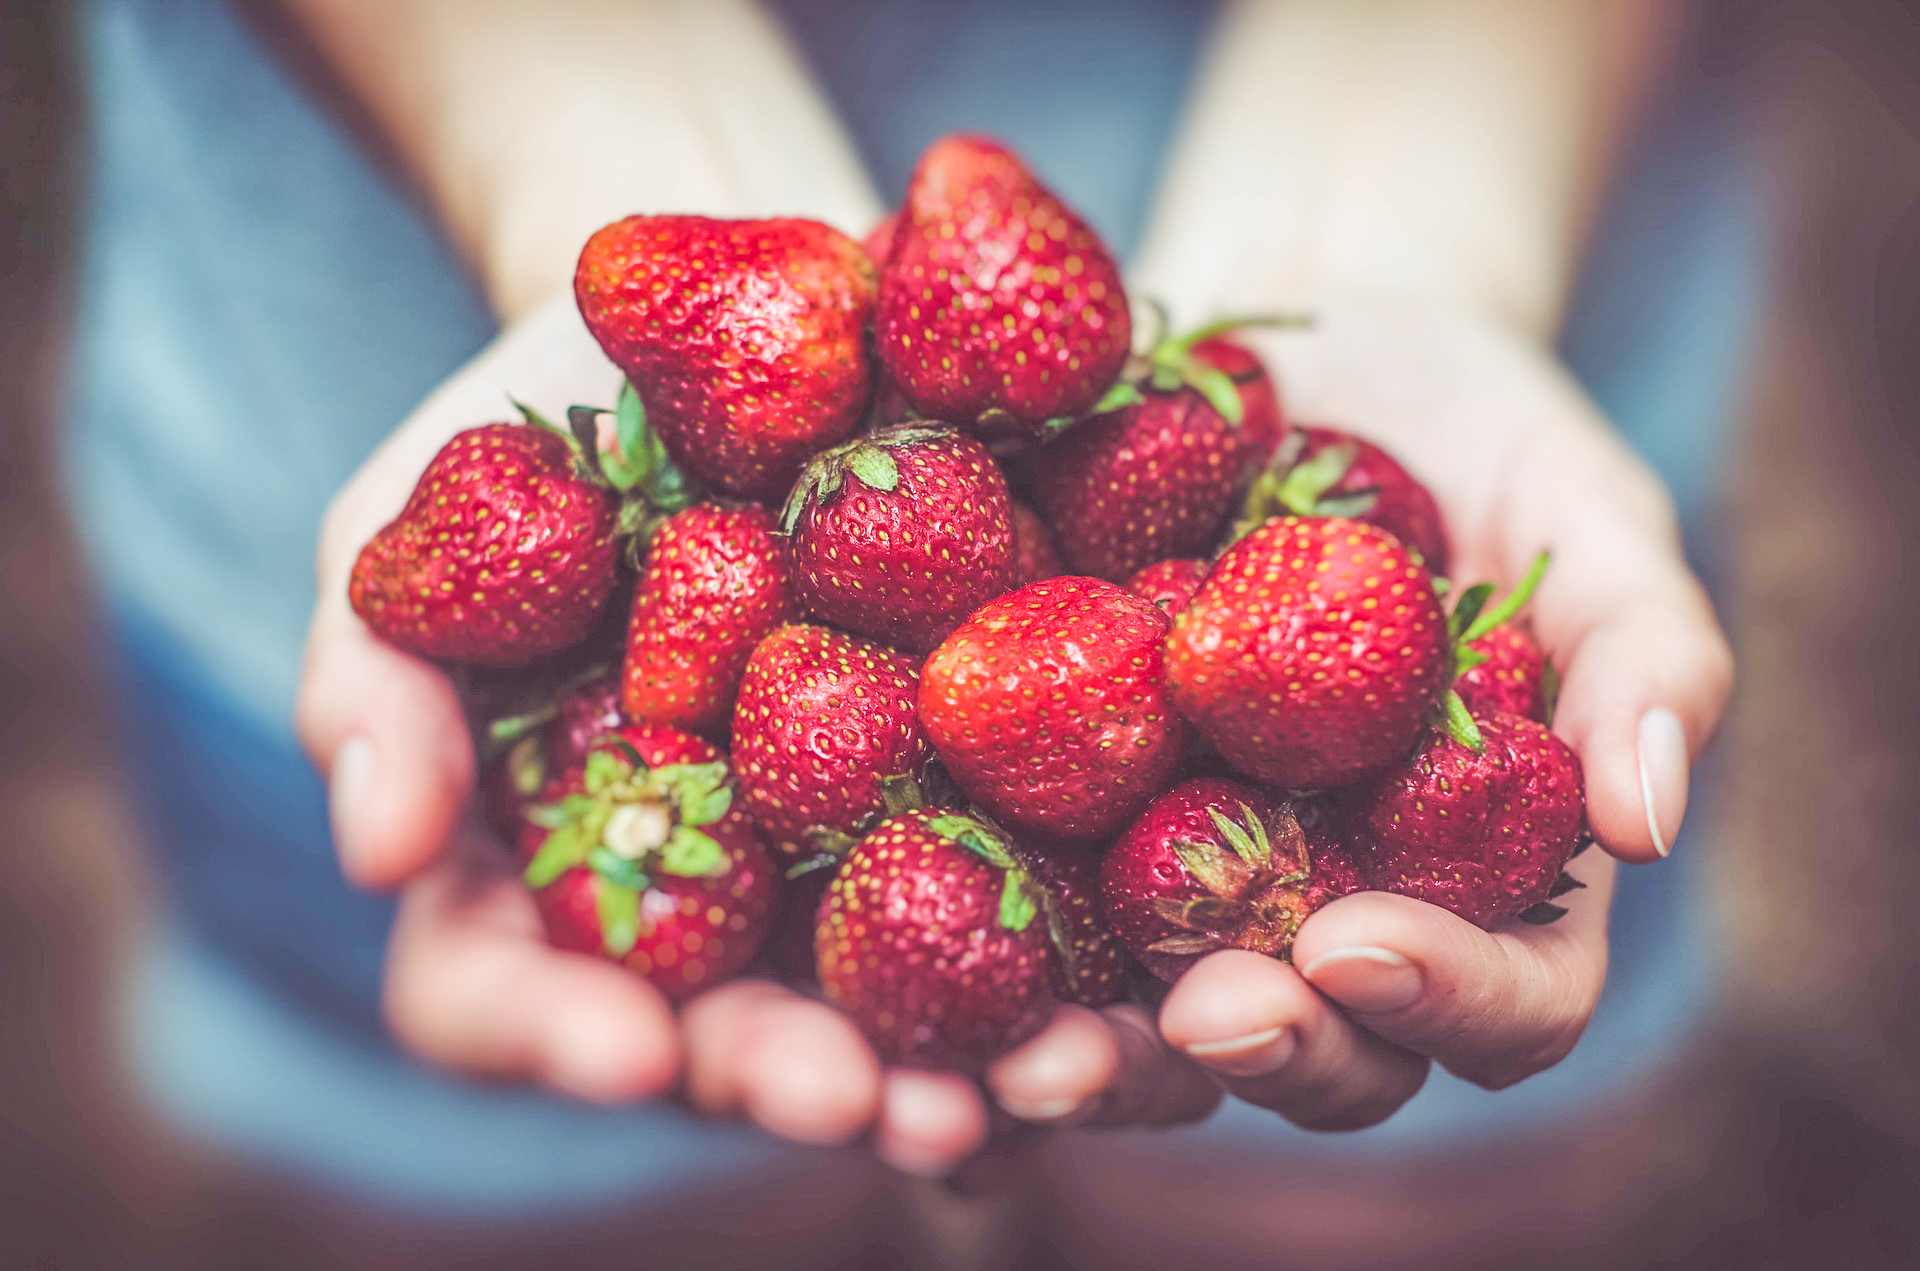 in season strawberries